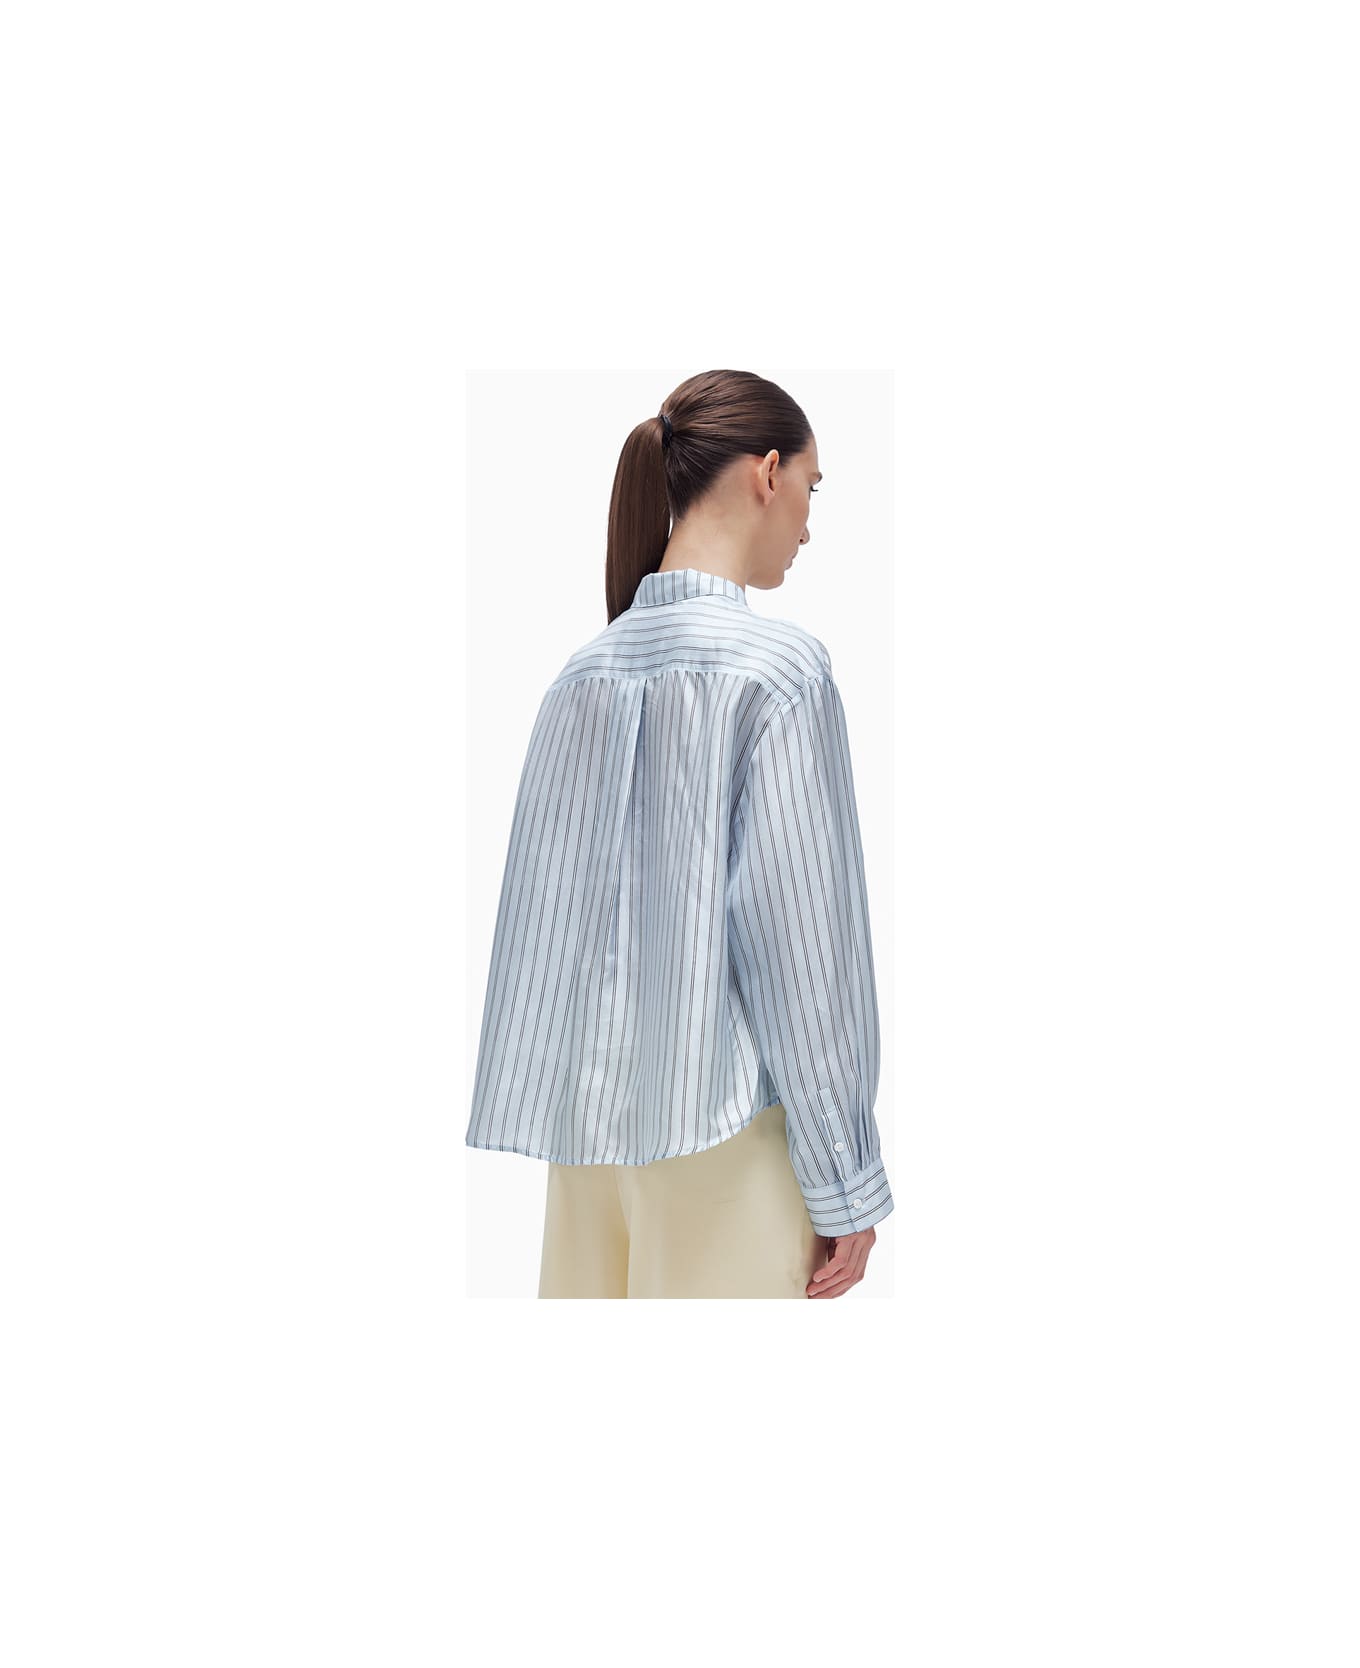 Herskind River Shirt - Light Blue Stripe シャツ